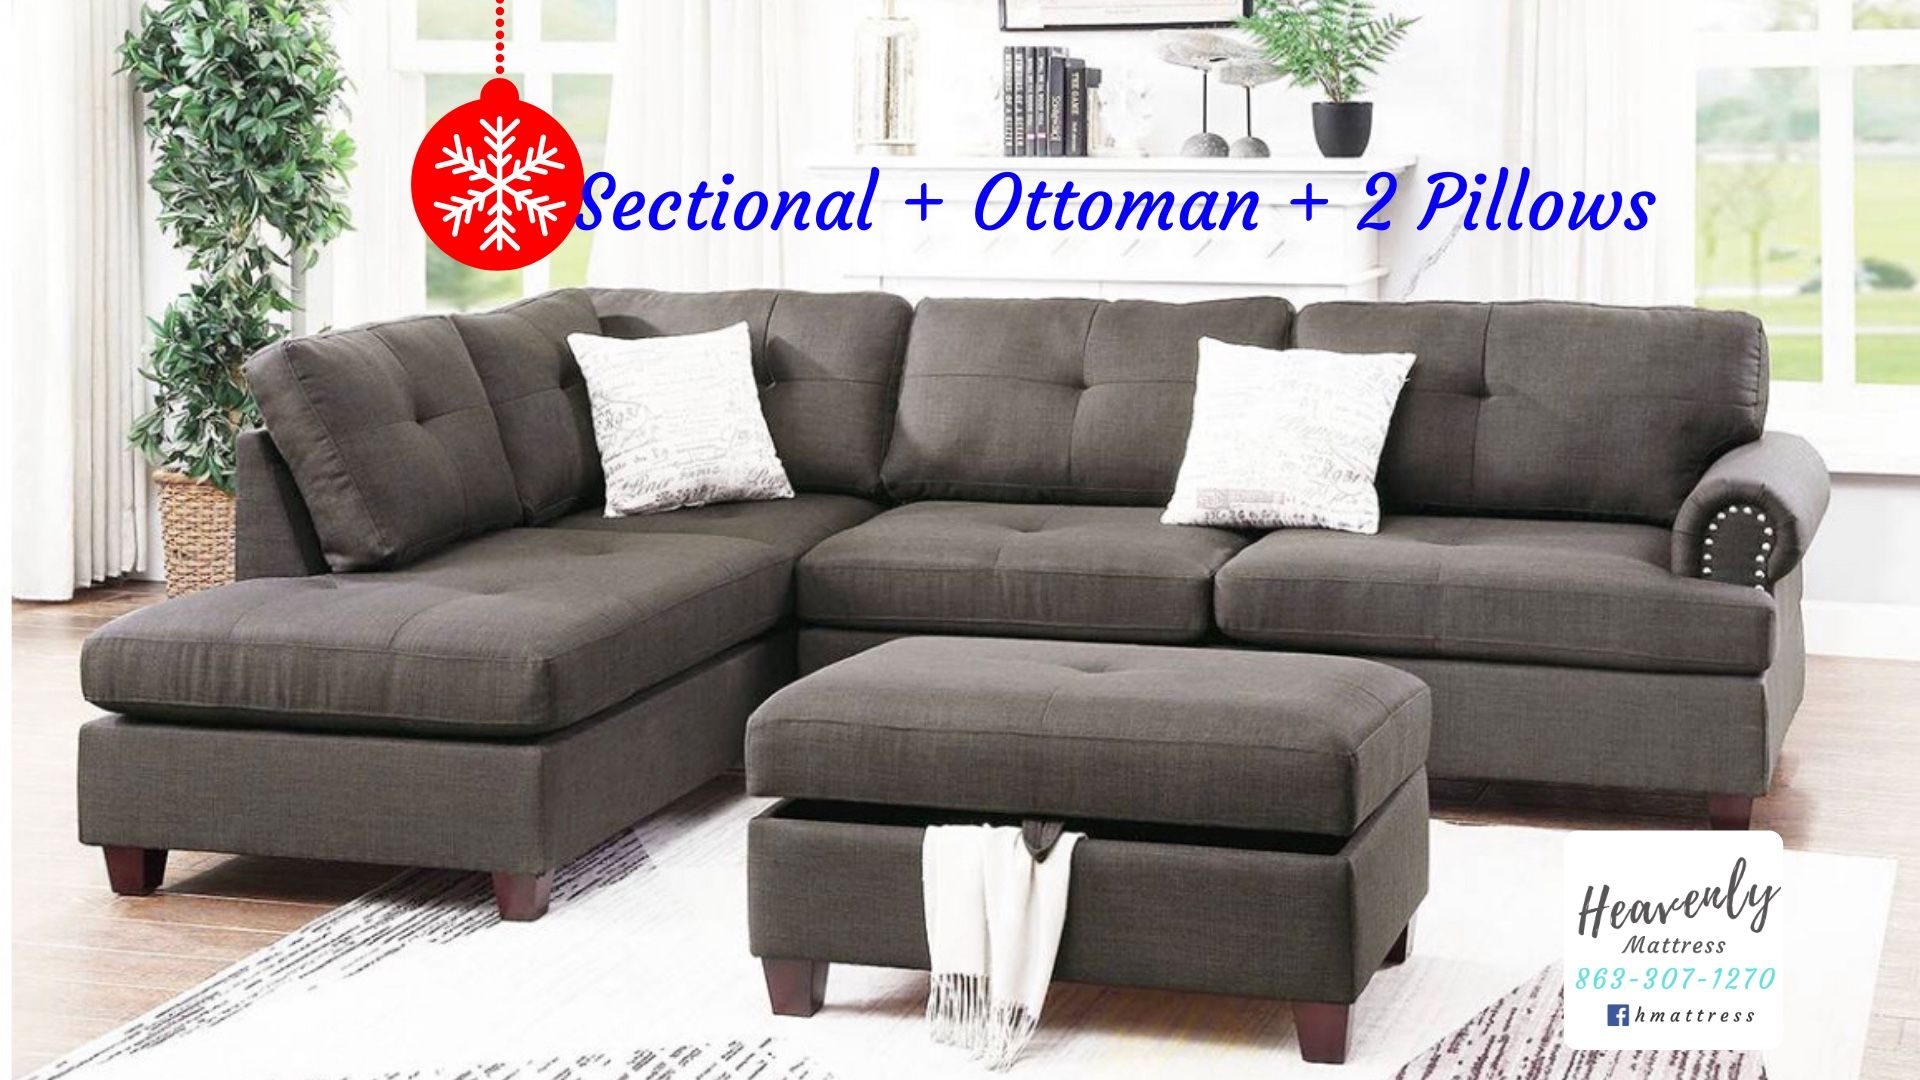 Sectional, Ottoman & Pillows